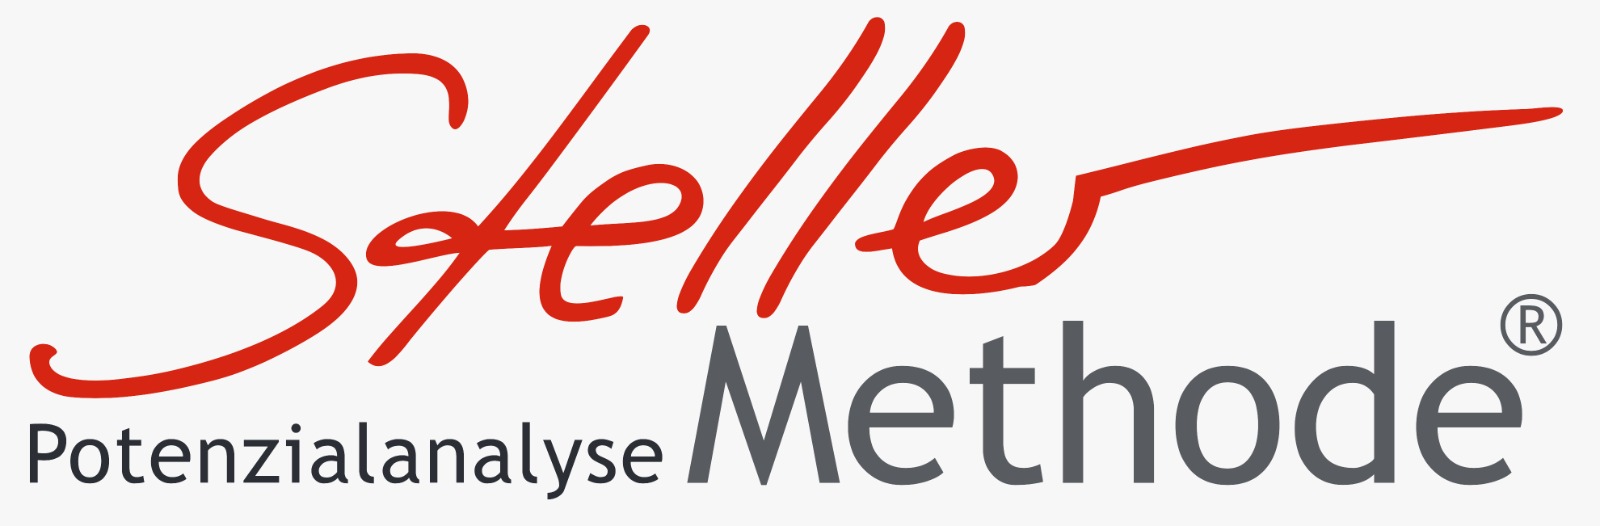 Logo StellerMethode, Potenzialanalyse